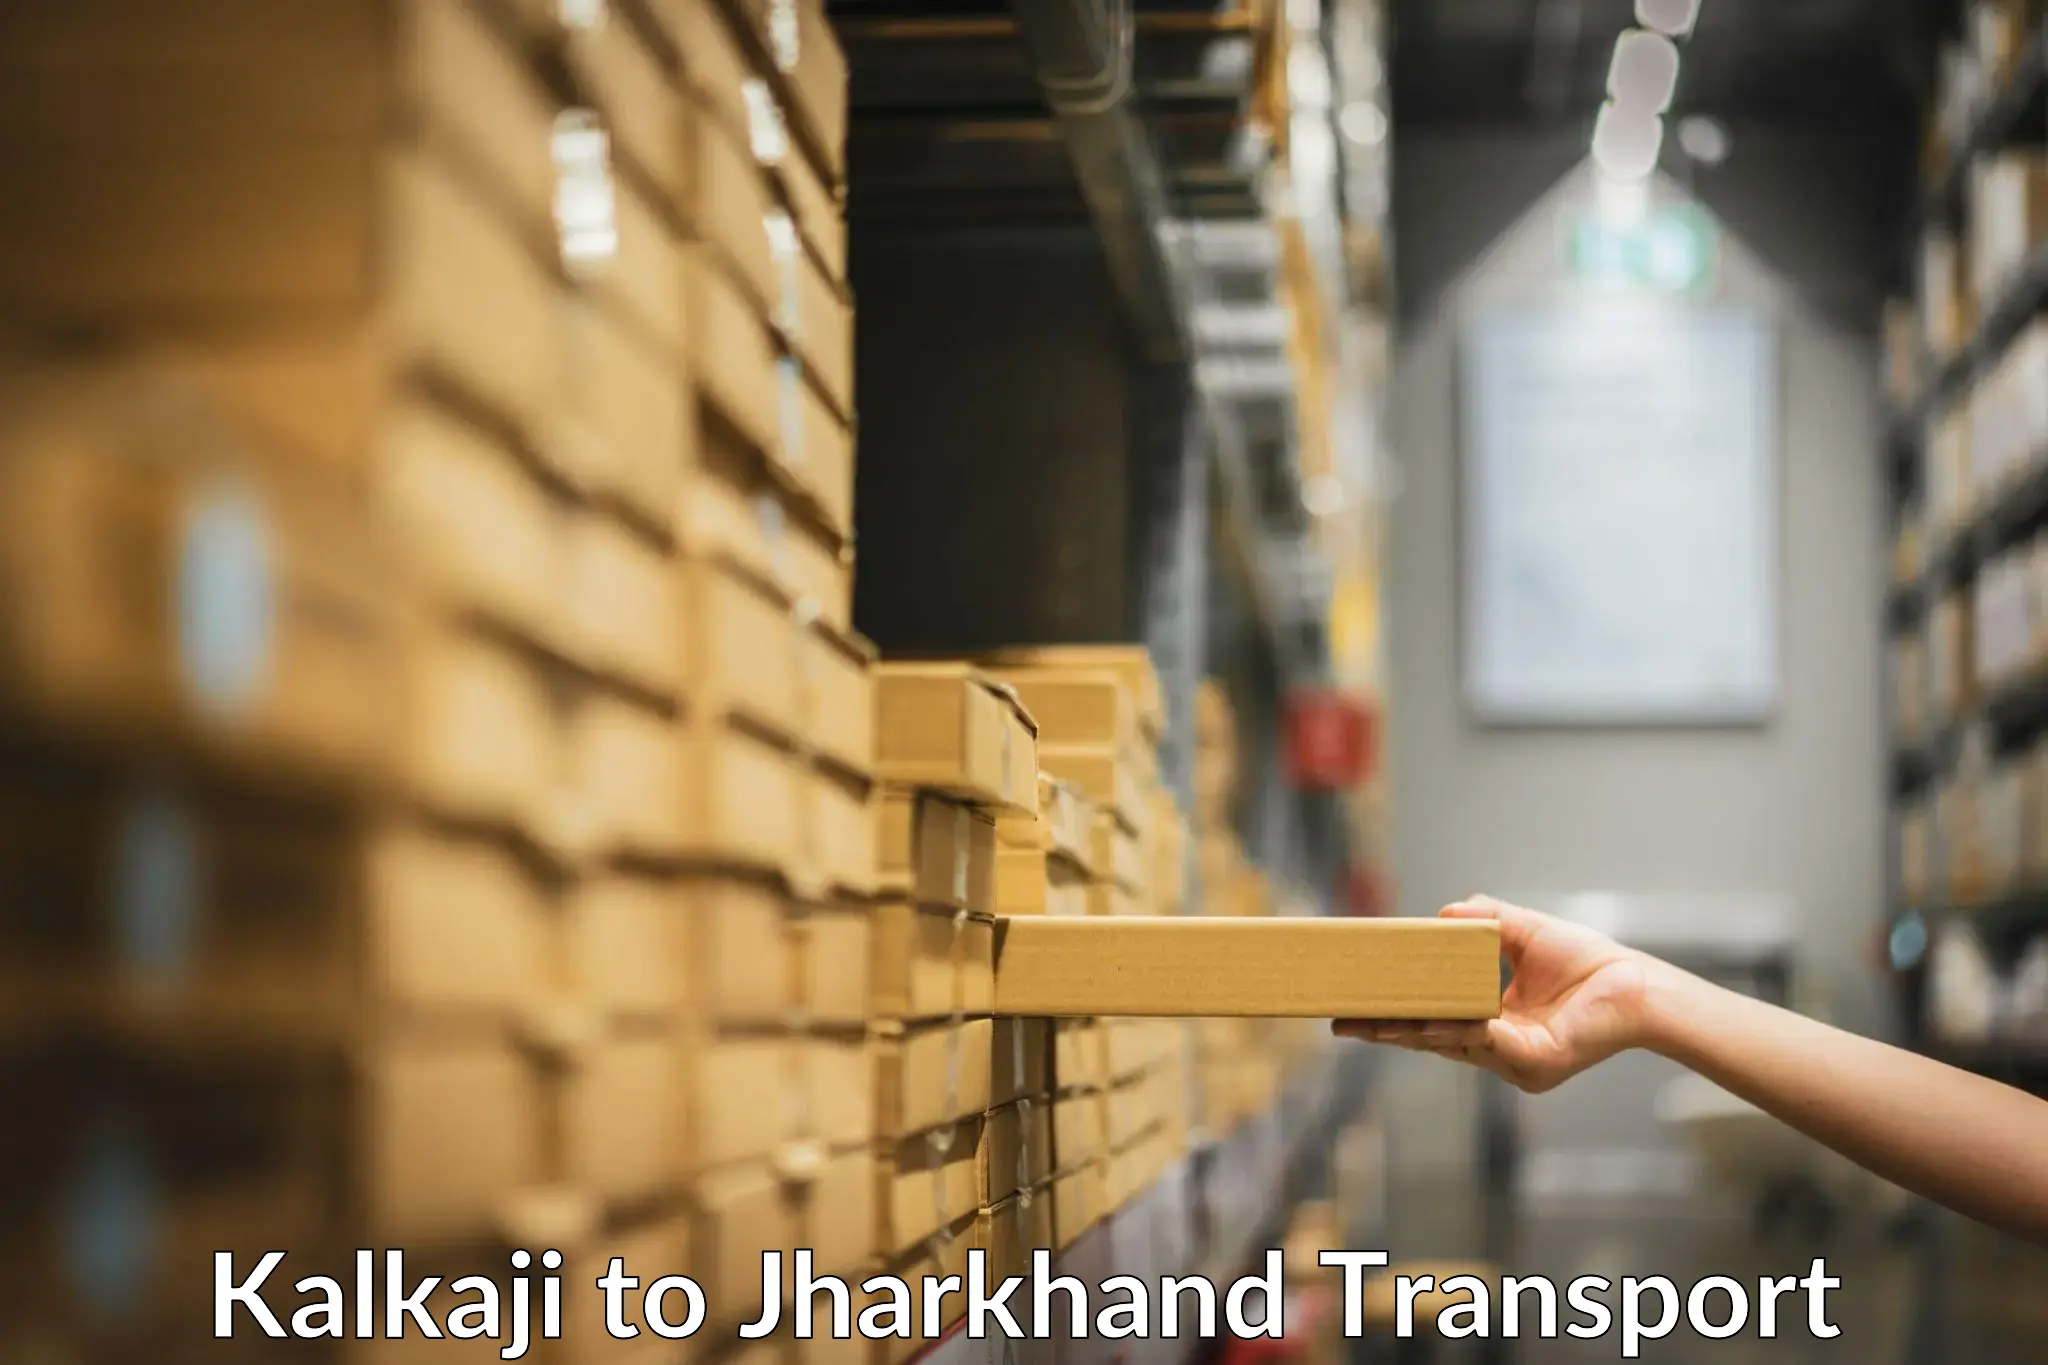 Daily transport service Kalkaji to Jharkhand